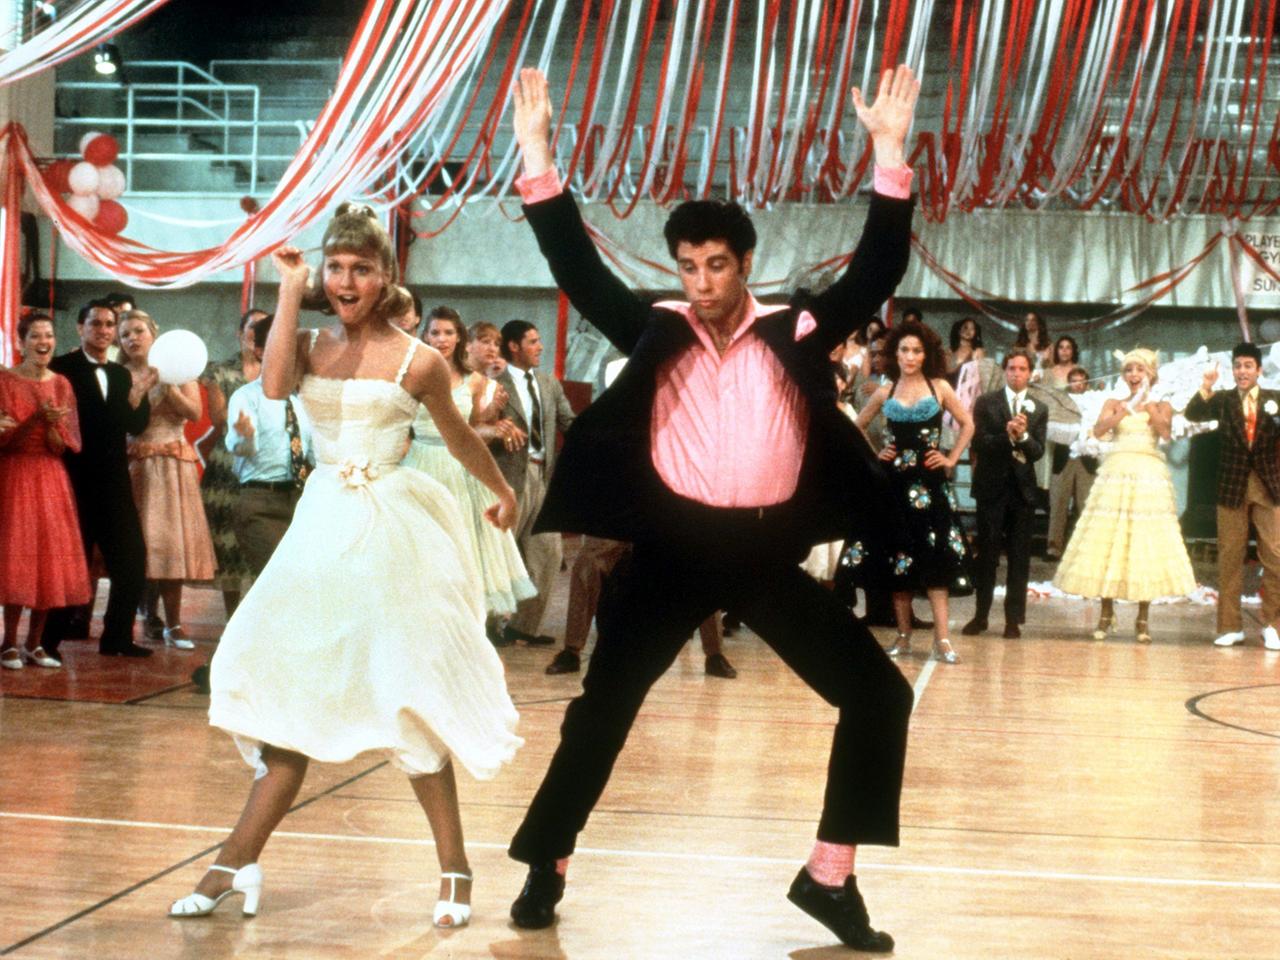 Olivia Newton-John und John Travolta in einer Tanzszene des Highschool-Musicals "Grease" aus dem Jahr 1978.